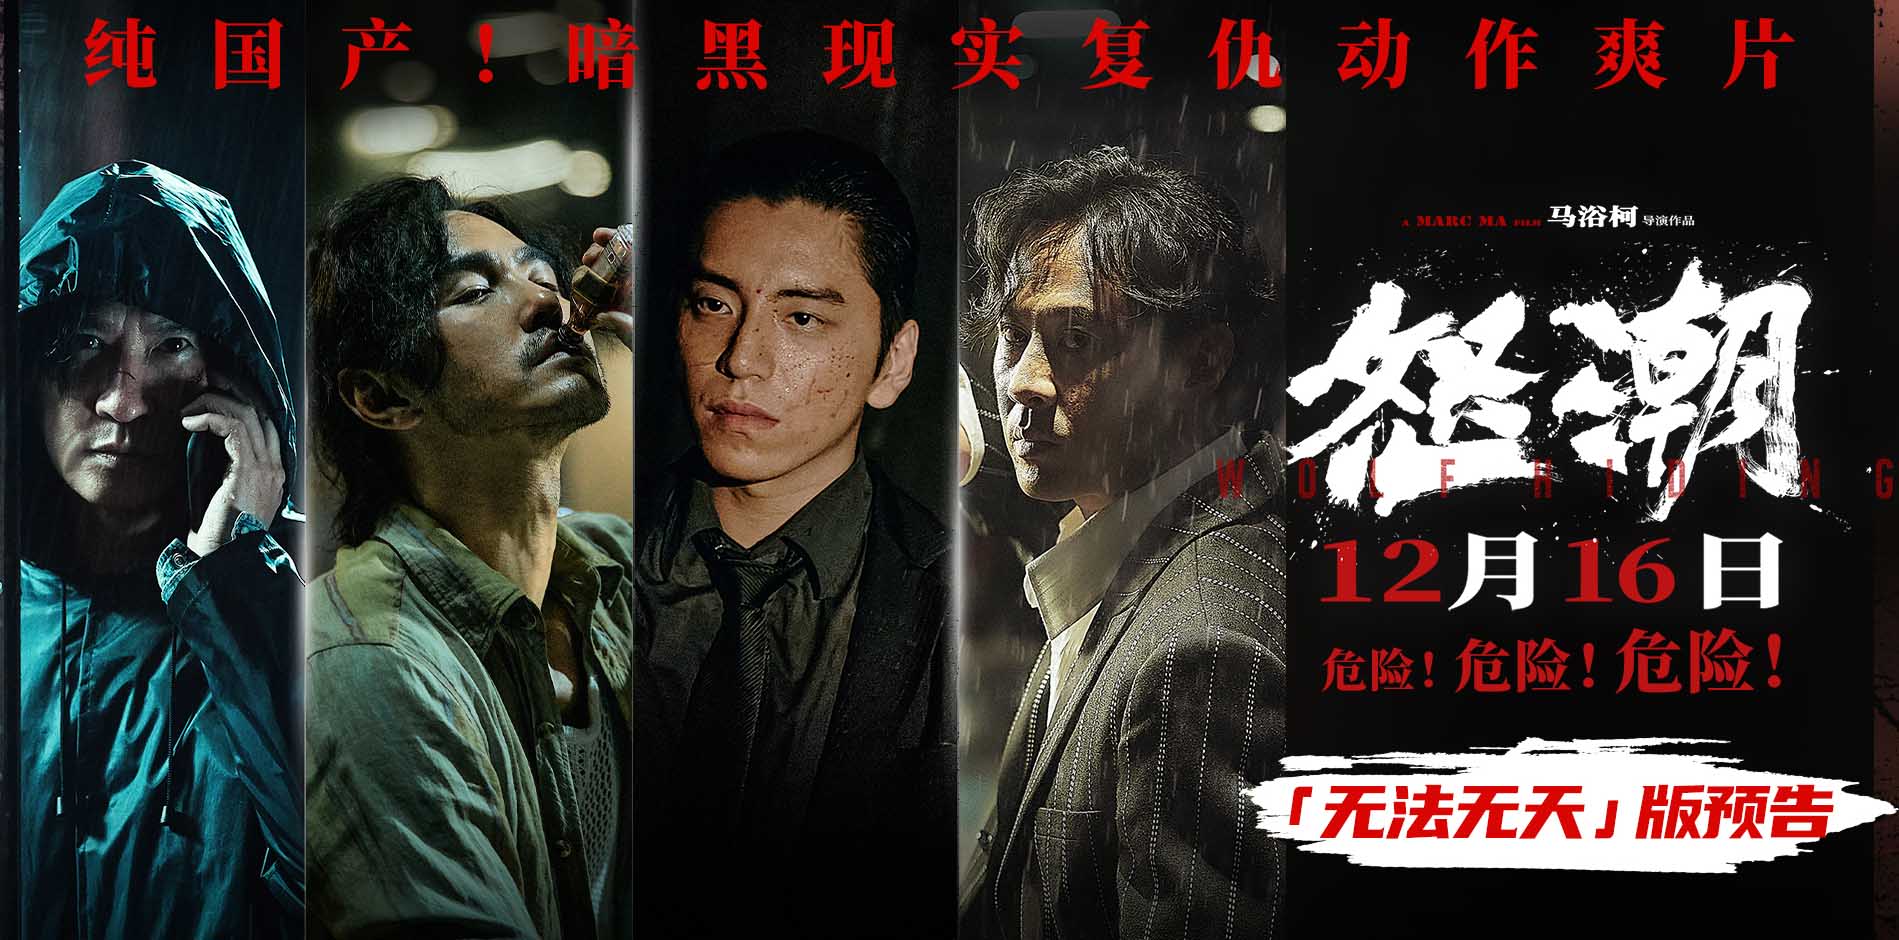 电影《怒潮》官宣提档12月16日 新预告揭露骇人听闻犯罪利益